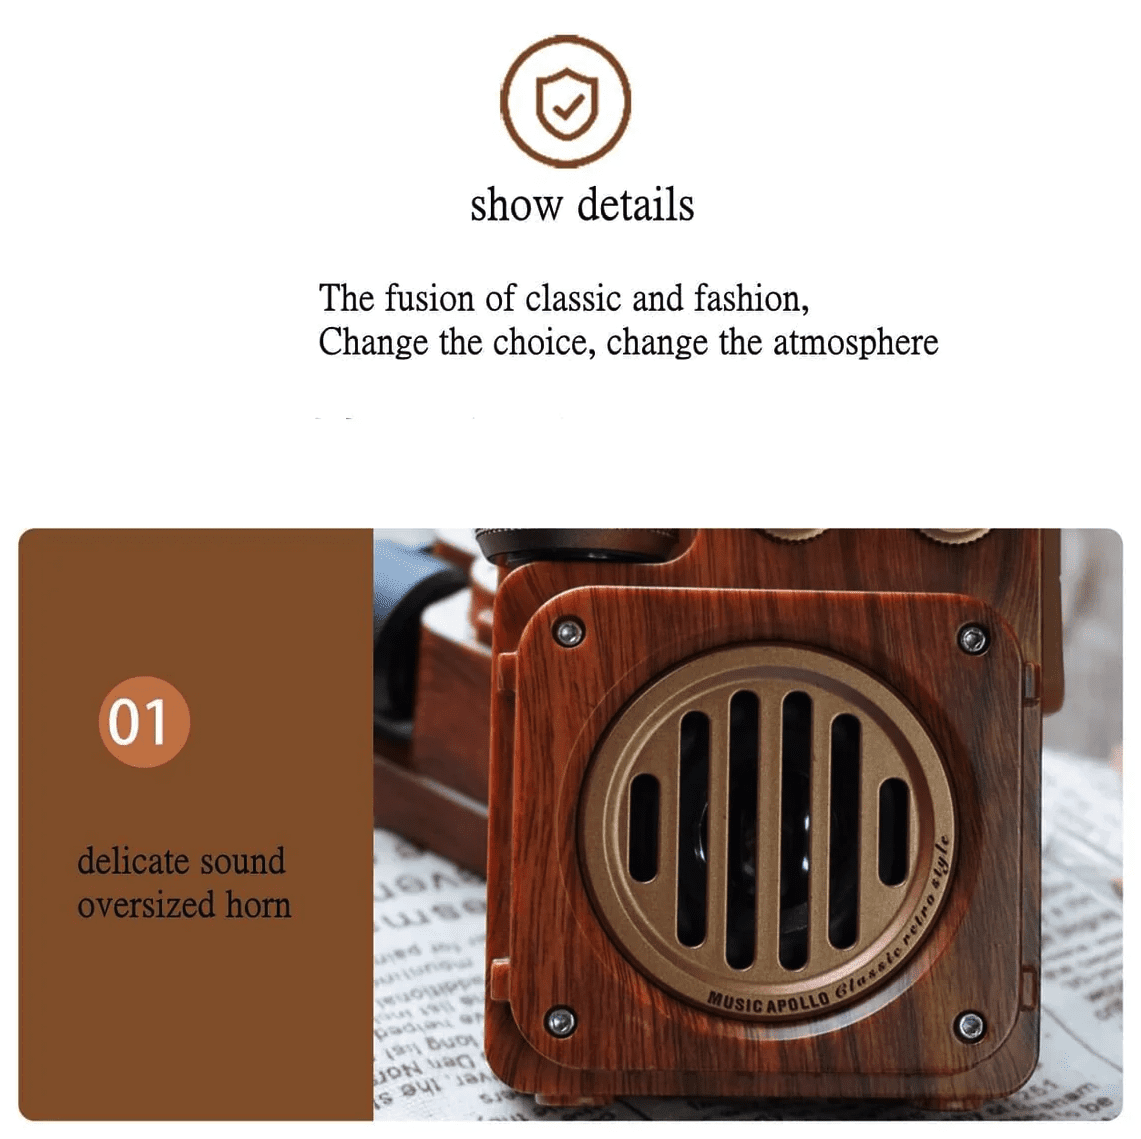 radio realizzata in legno dal design vintage con ricevitore retrò